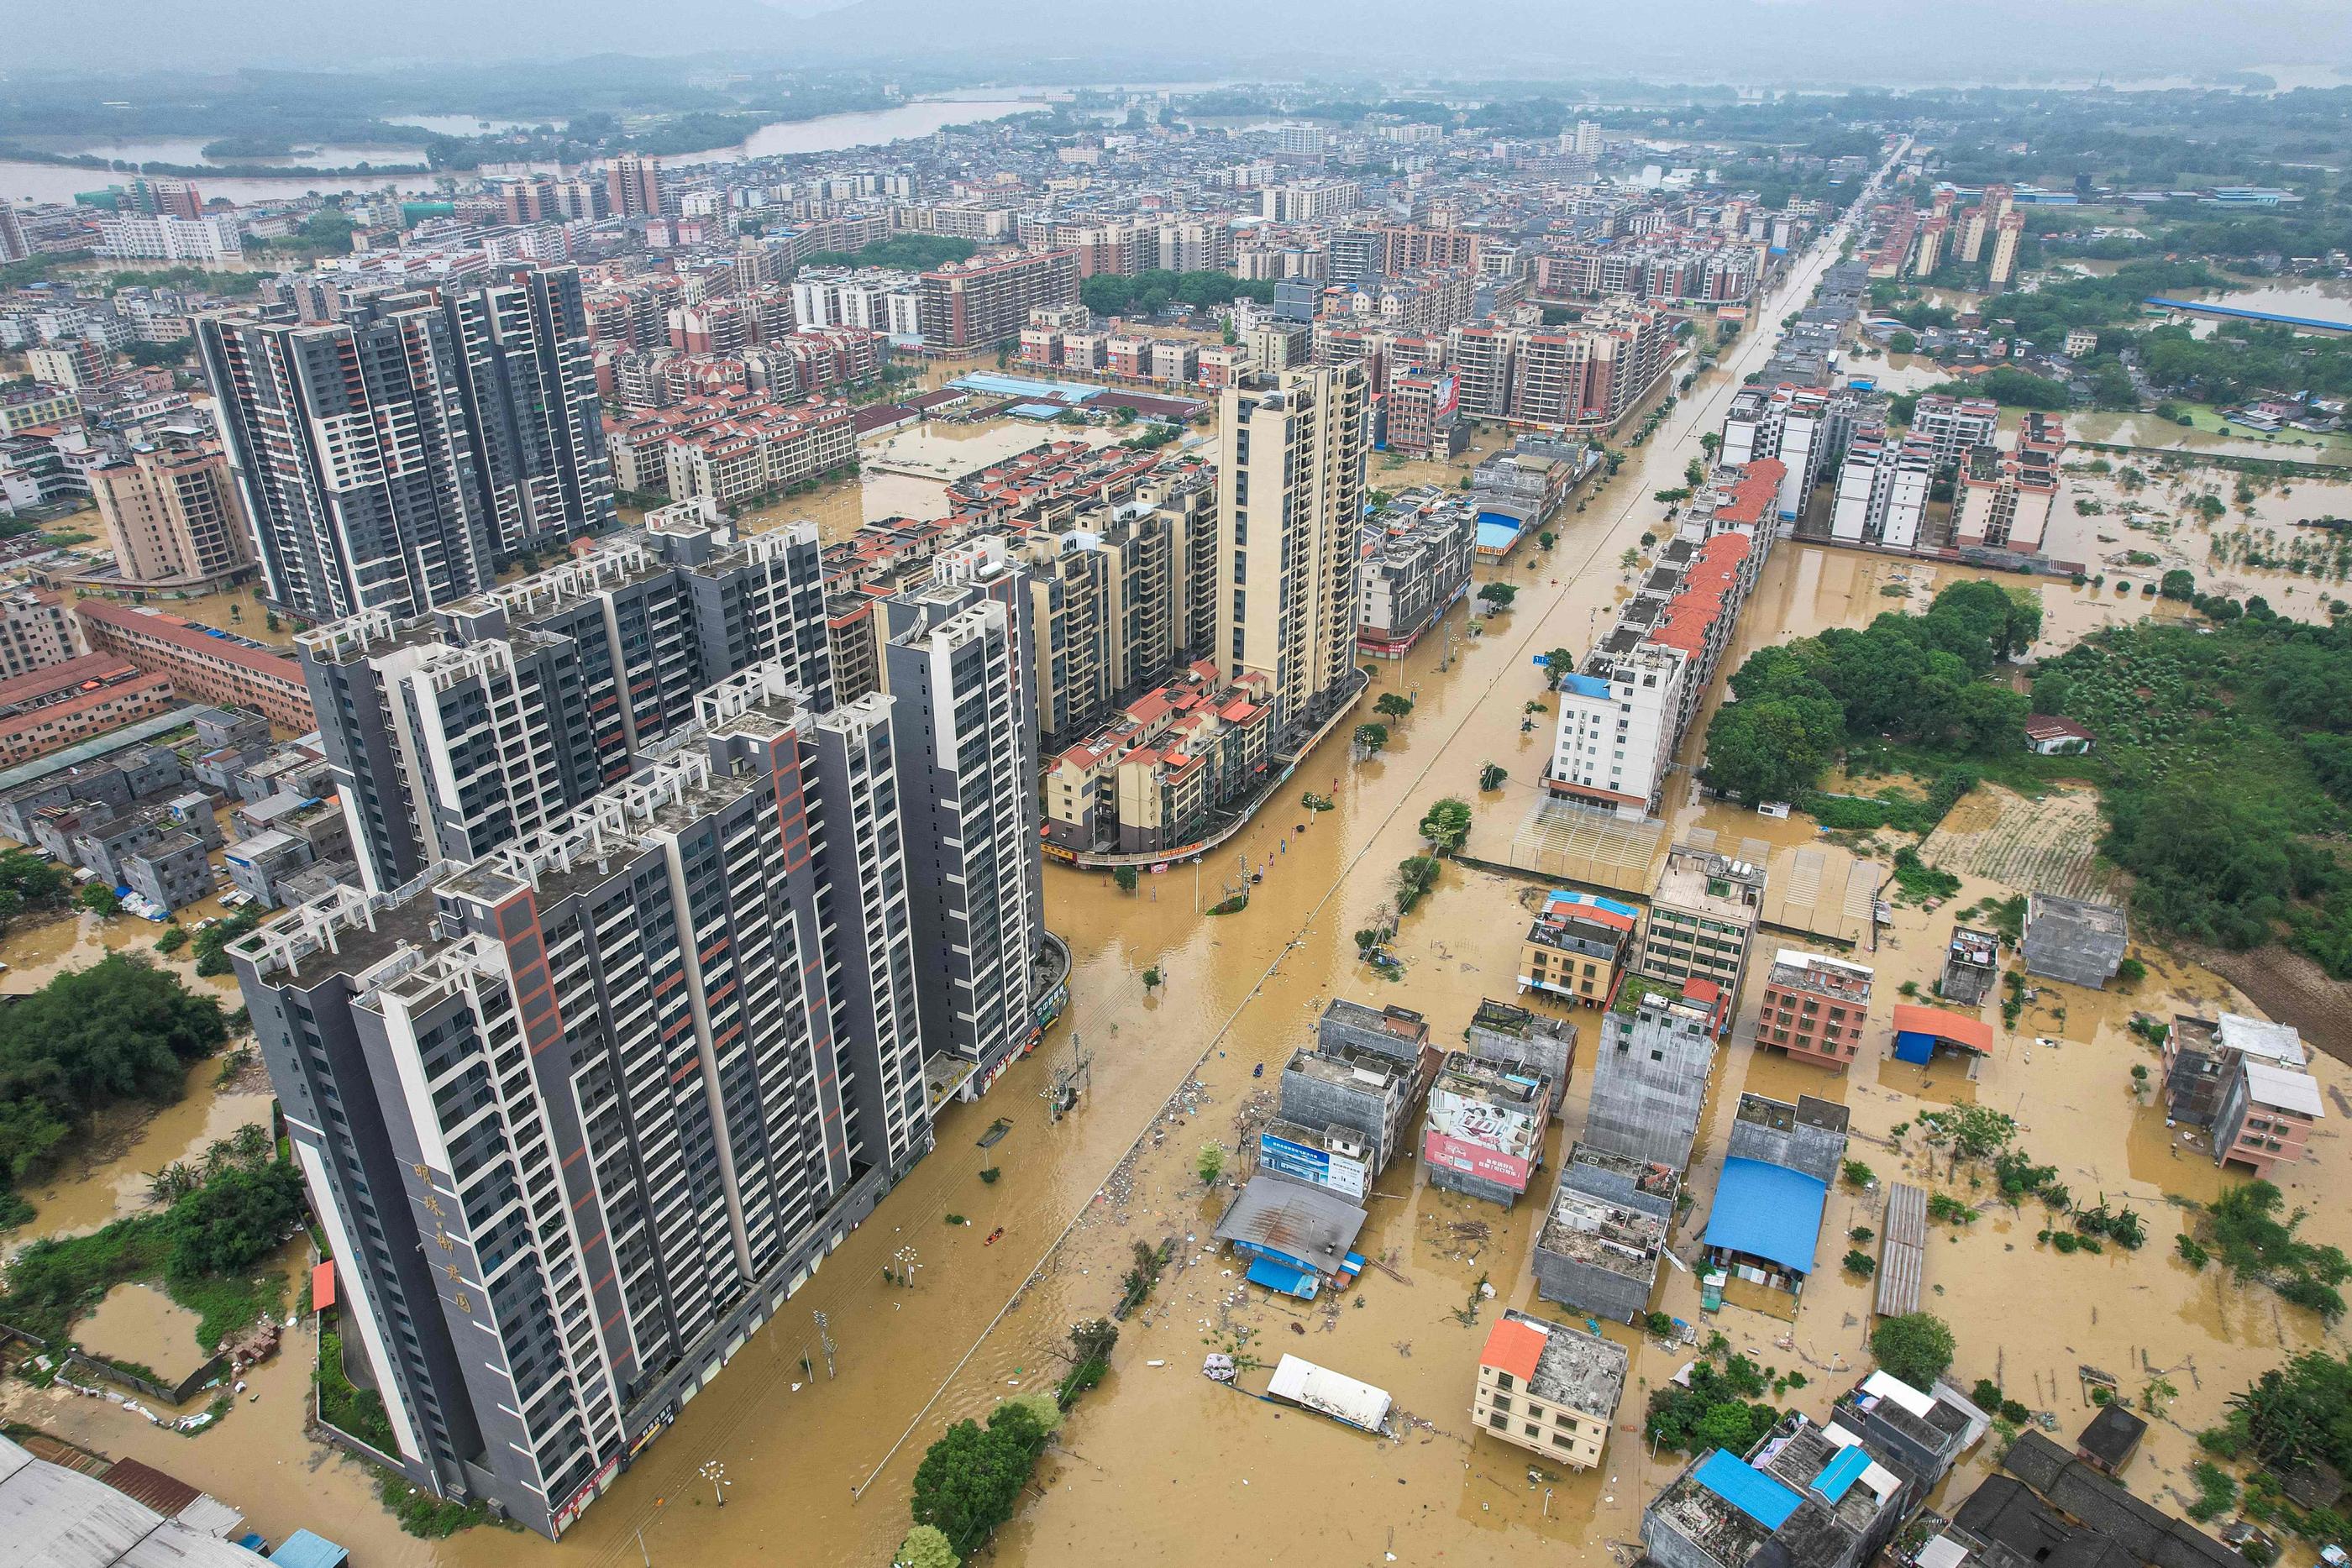 La Chine connaît fin avril de fortes pluies, provoquant d'importantes inondations, comme ici à Qingyuan, dans la province méridionale du Guangdong. AFP / CNS